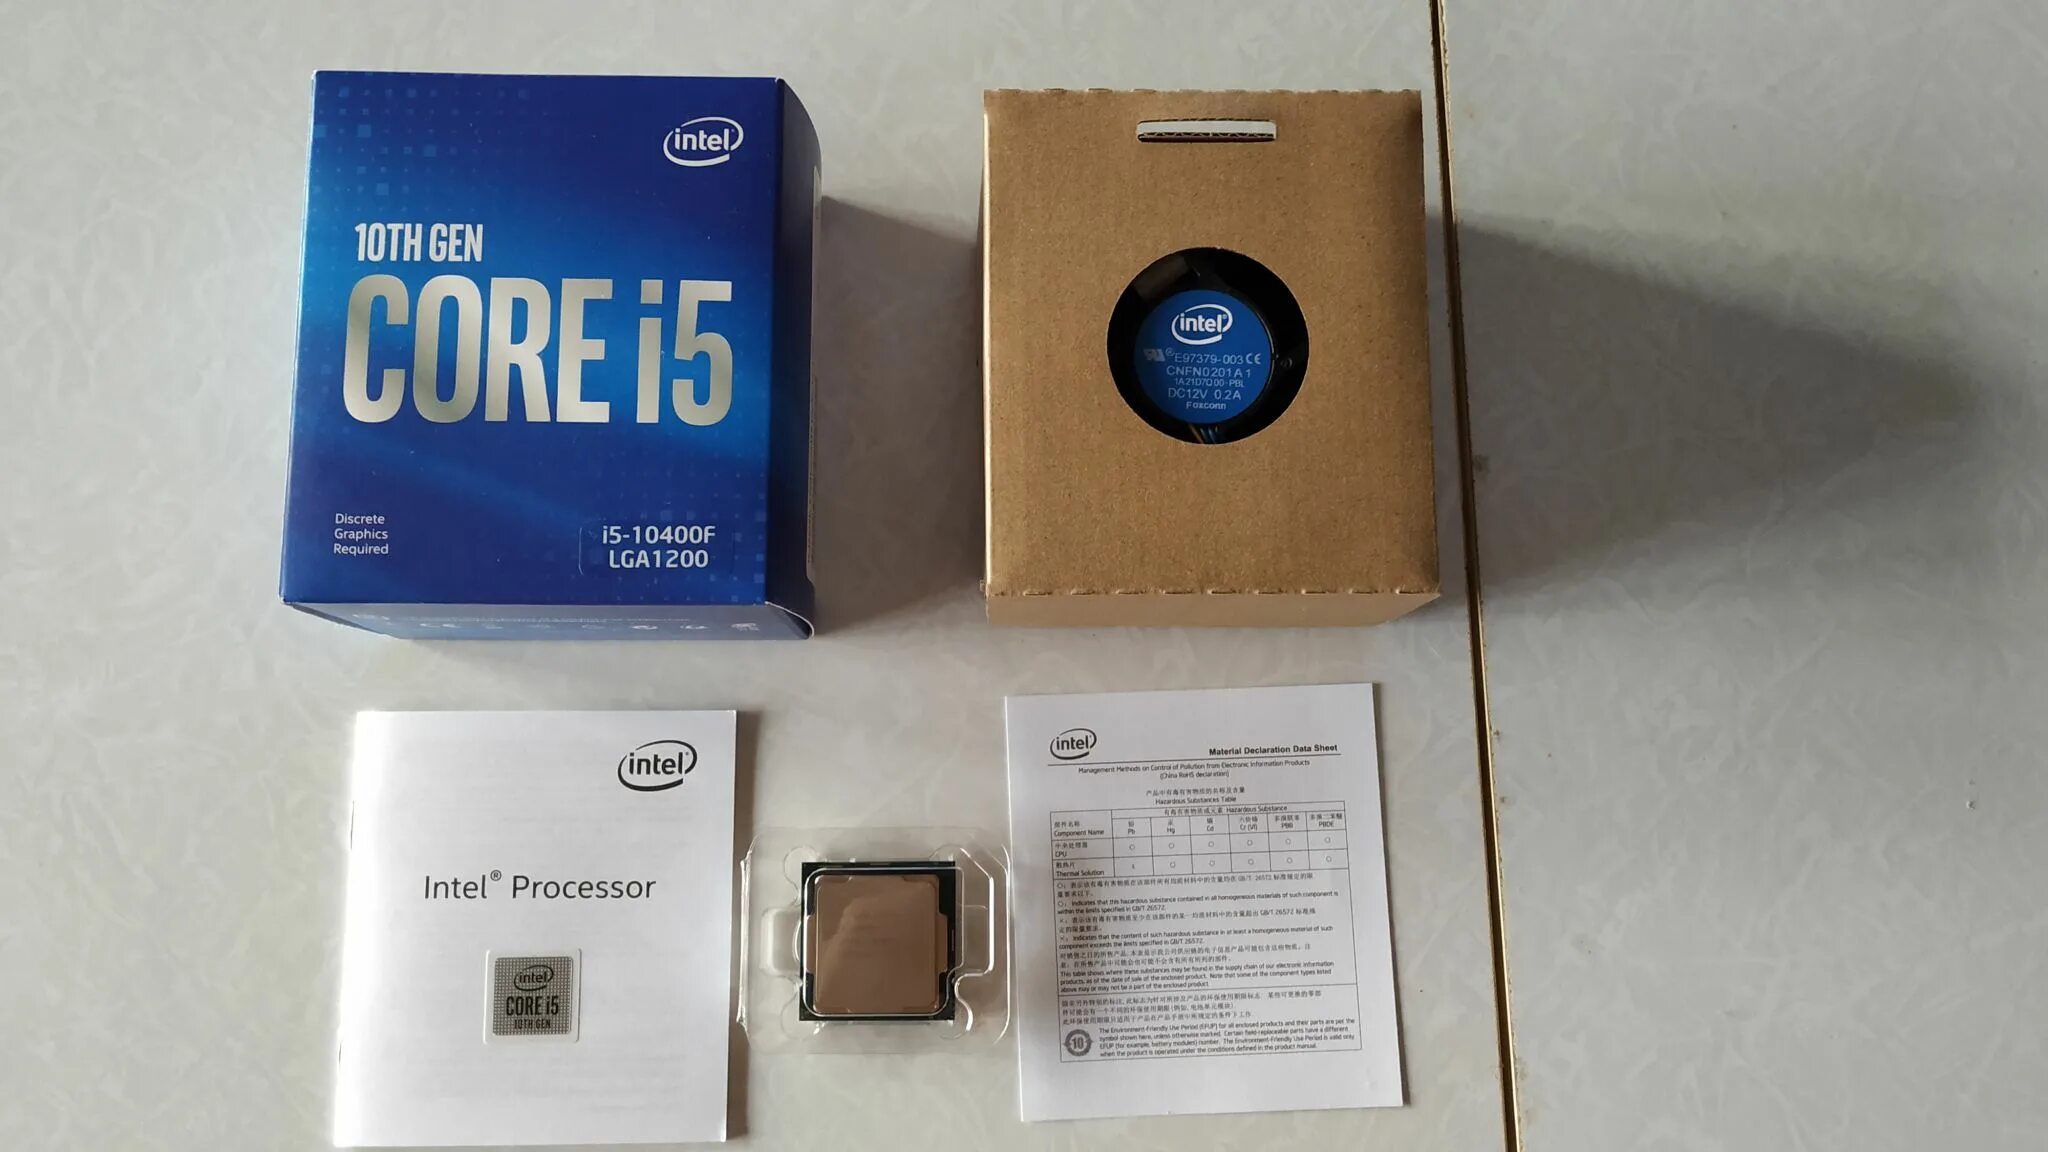 12600f. Процессор Intel Core i5-10400f OEM. Процессор Intel Core i5-10400f Box. Процессор Intel Core i5 Comet Lake i5-10400f OEM. Intel Core i5 10400, LGA 1200, OEM.